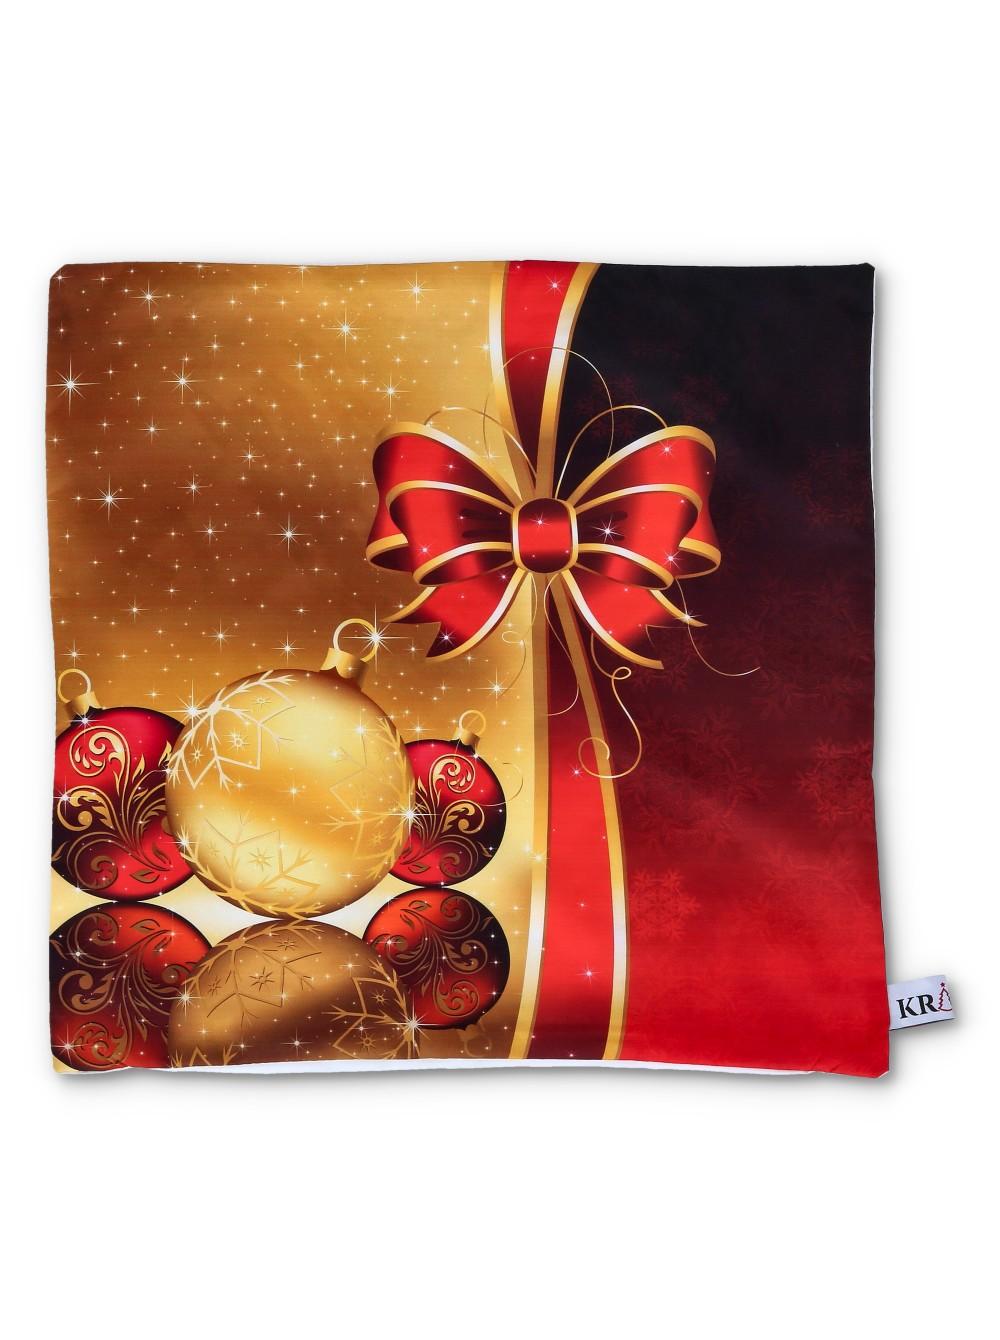 Selected image for KRIST+ Novogodišnja jastučnica sa mašnom crveno-zlatna